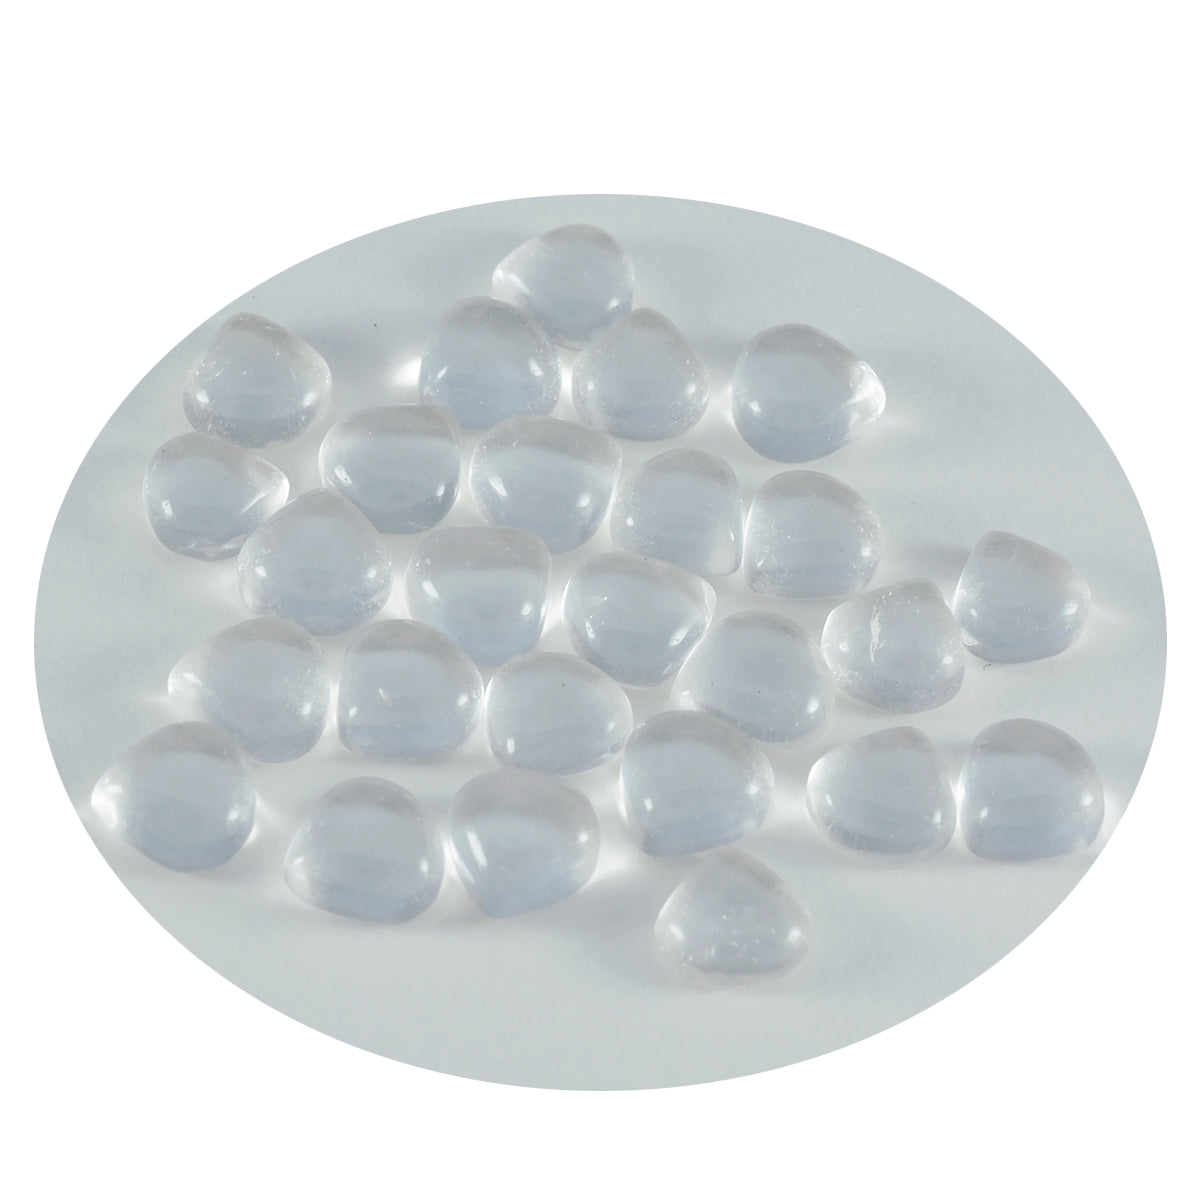 Riyogems 1 Stück weißer Kristallquarz-Cabochon, 4 x 4 mm, Herzform, süße Qualitätsedelsteine